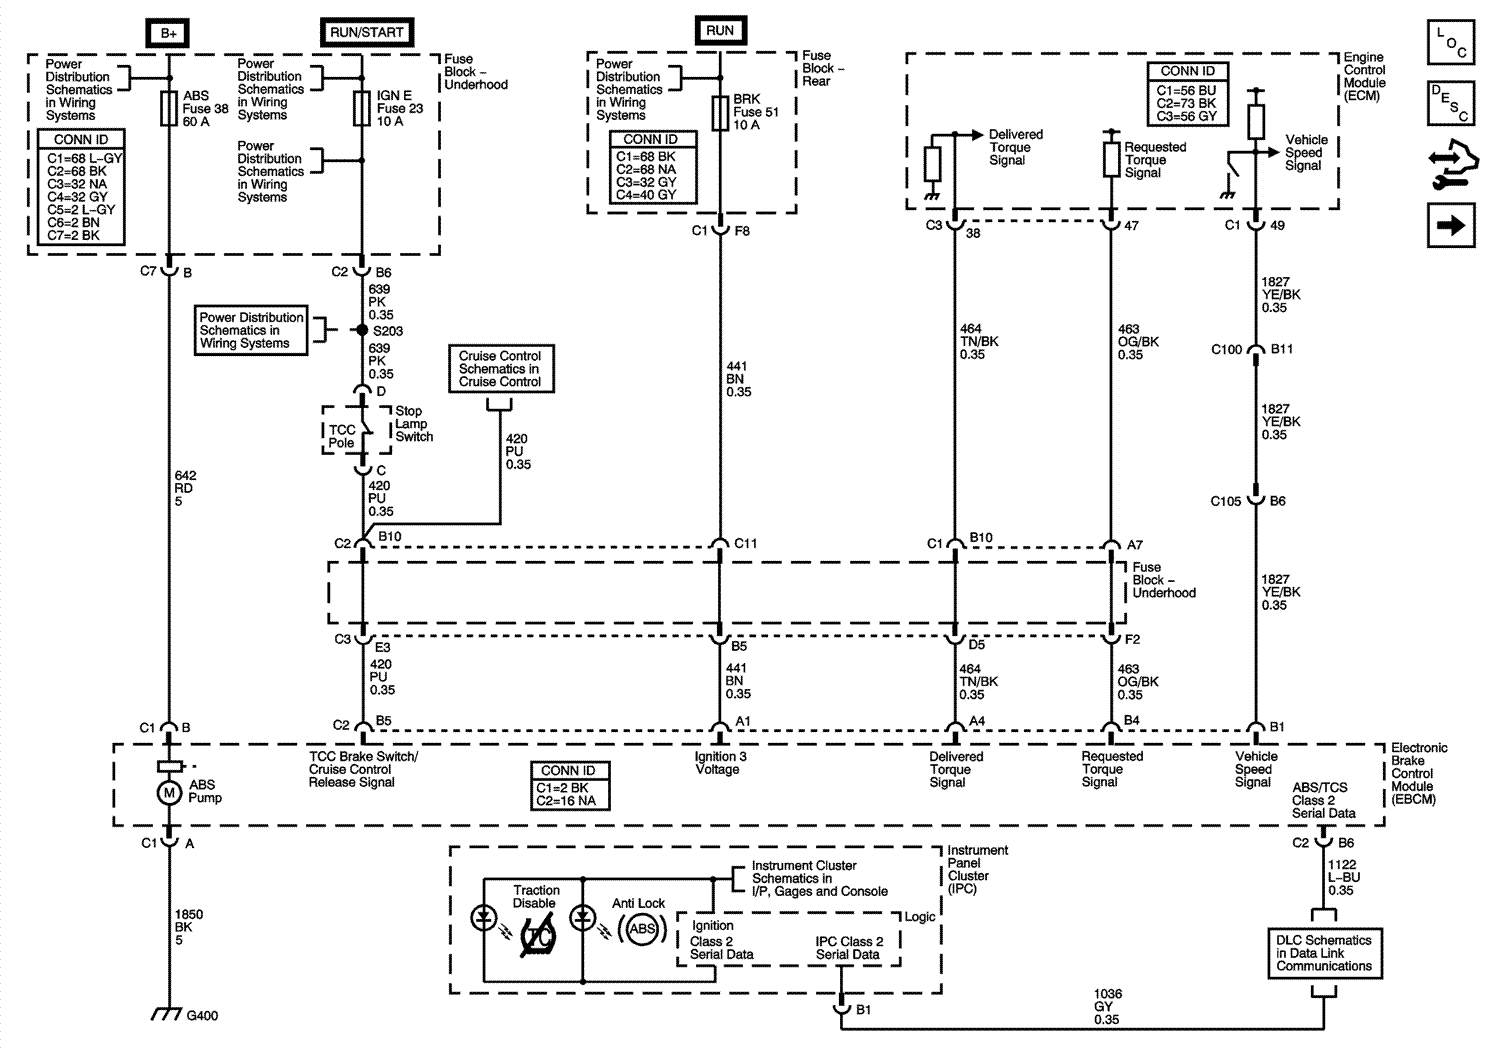 2003 Trailblazer Wiring Schematic - Cars Wiring Diagram